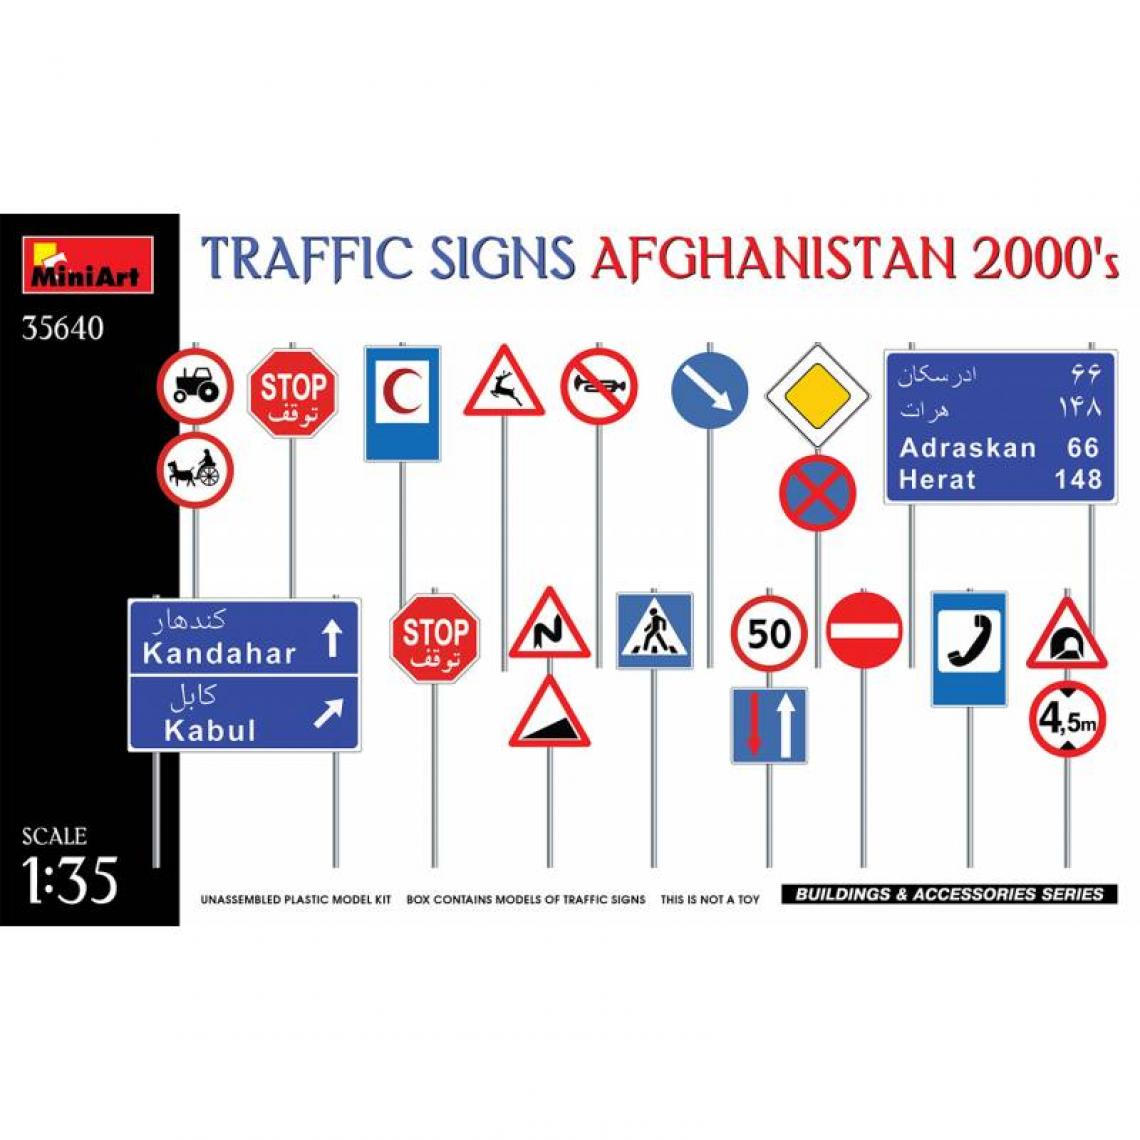 Mini Art - Traffic Signs Afghanistan 2000's - Décor Modélisme - Accessoires maquettes